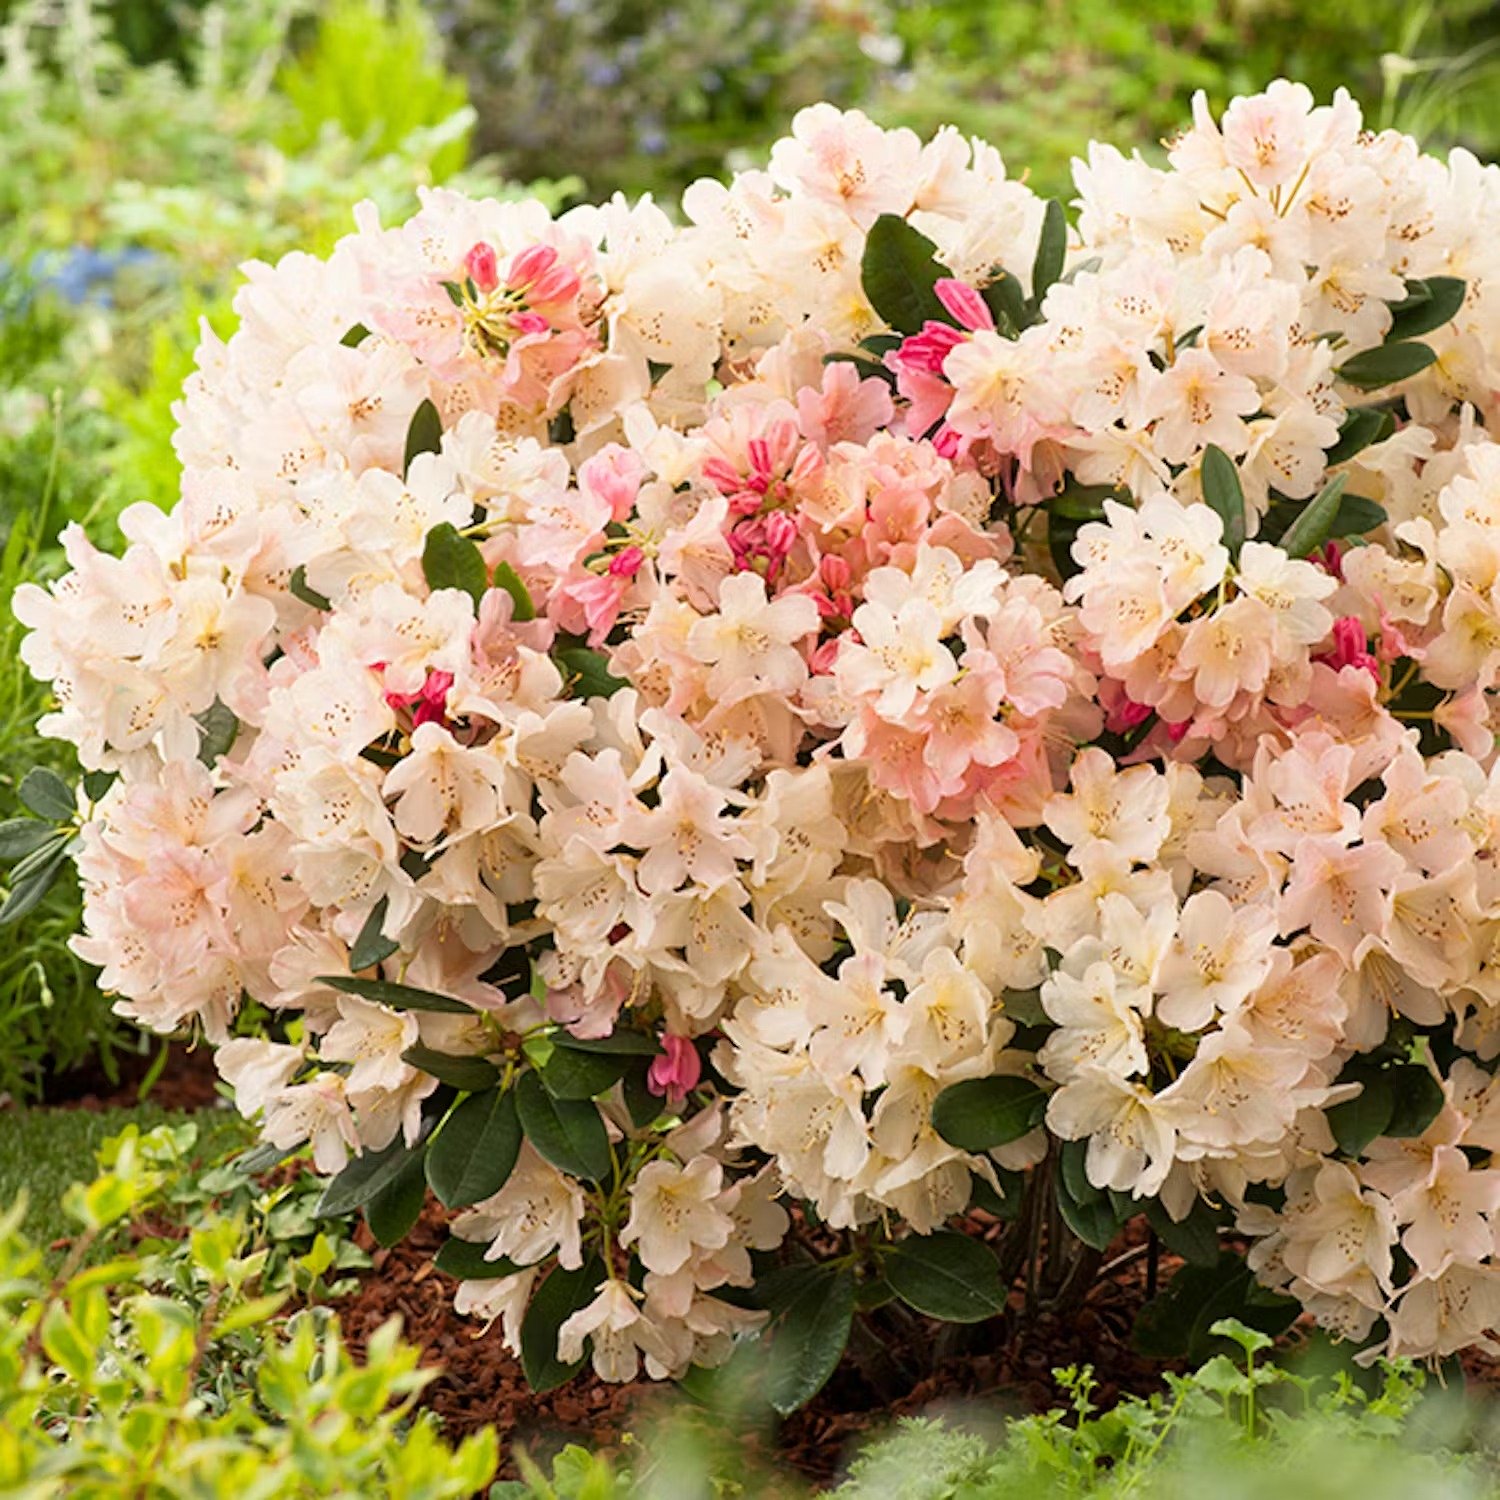 Plantera rhododendron i rabatt